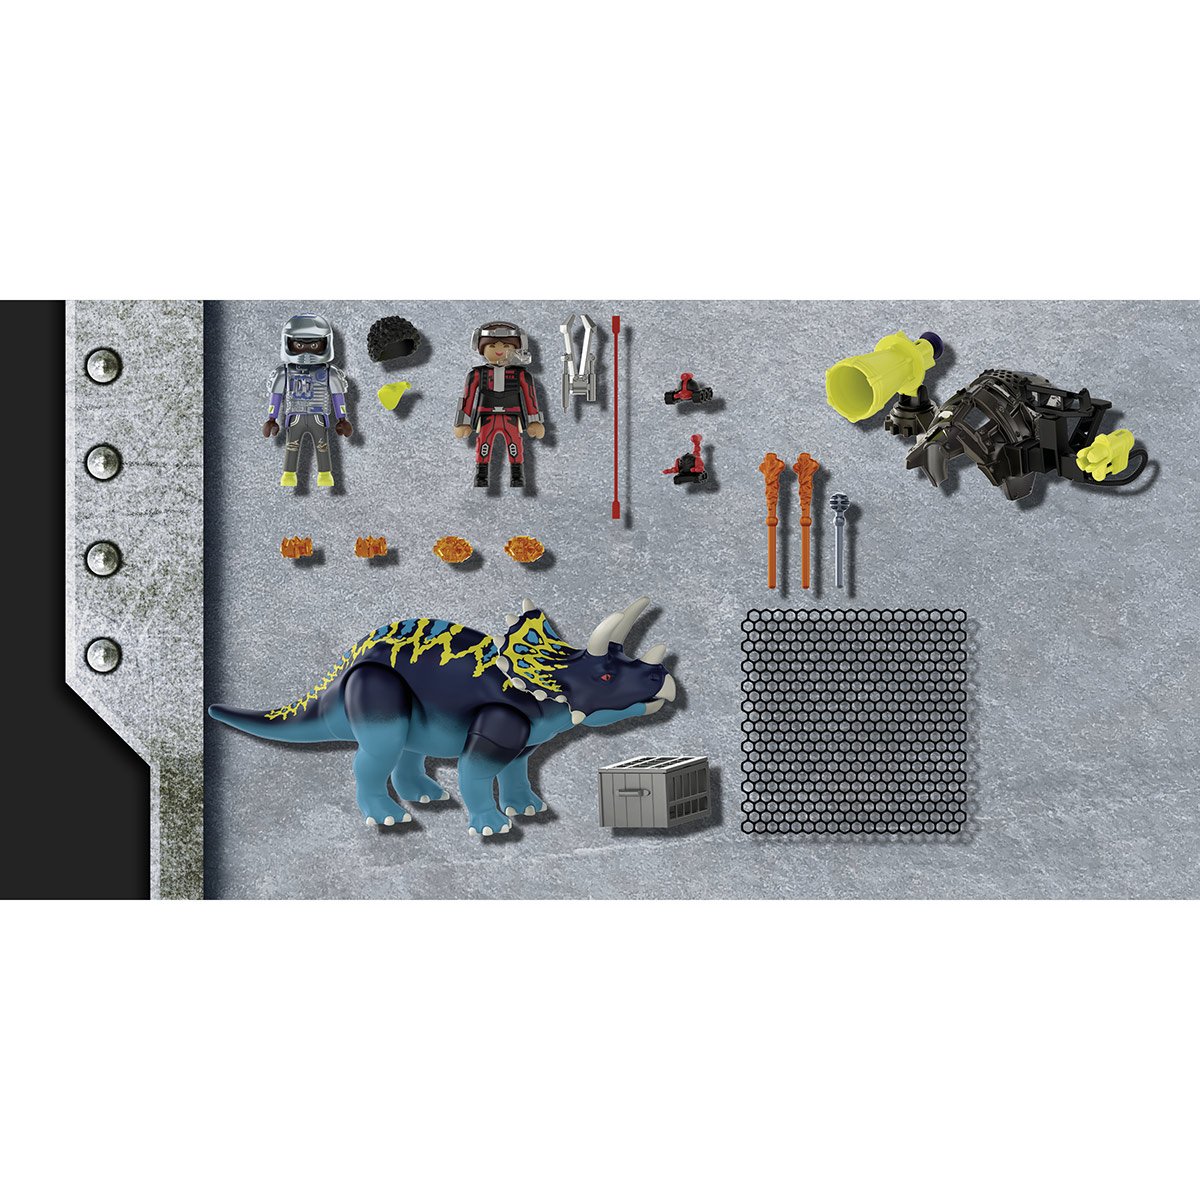 Spinosaure et Combattant Playmobil Dino Rise 71260 - La Grande Récré